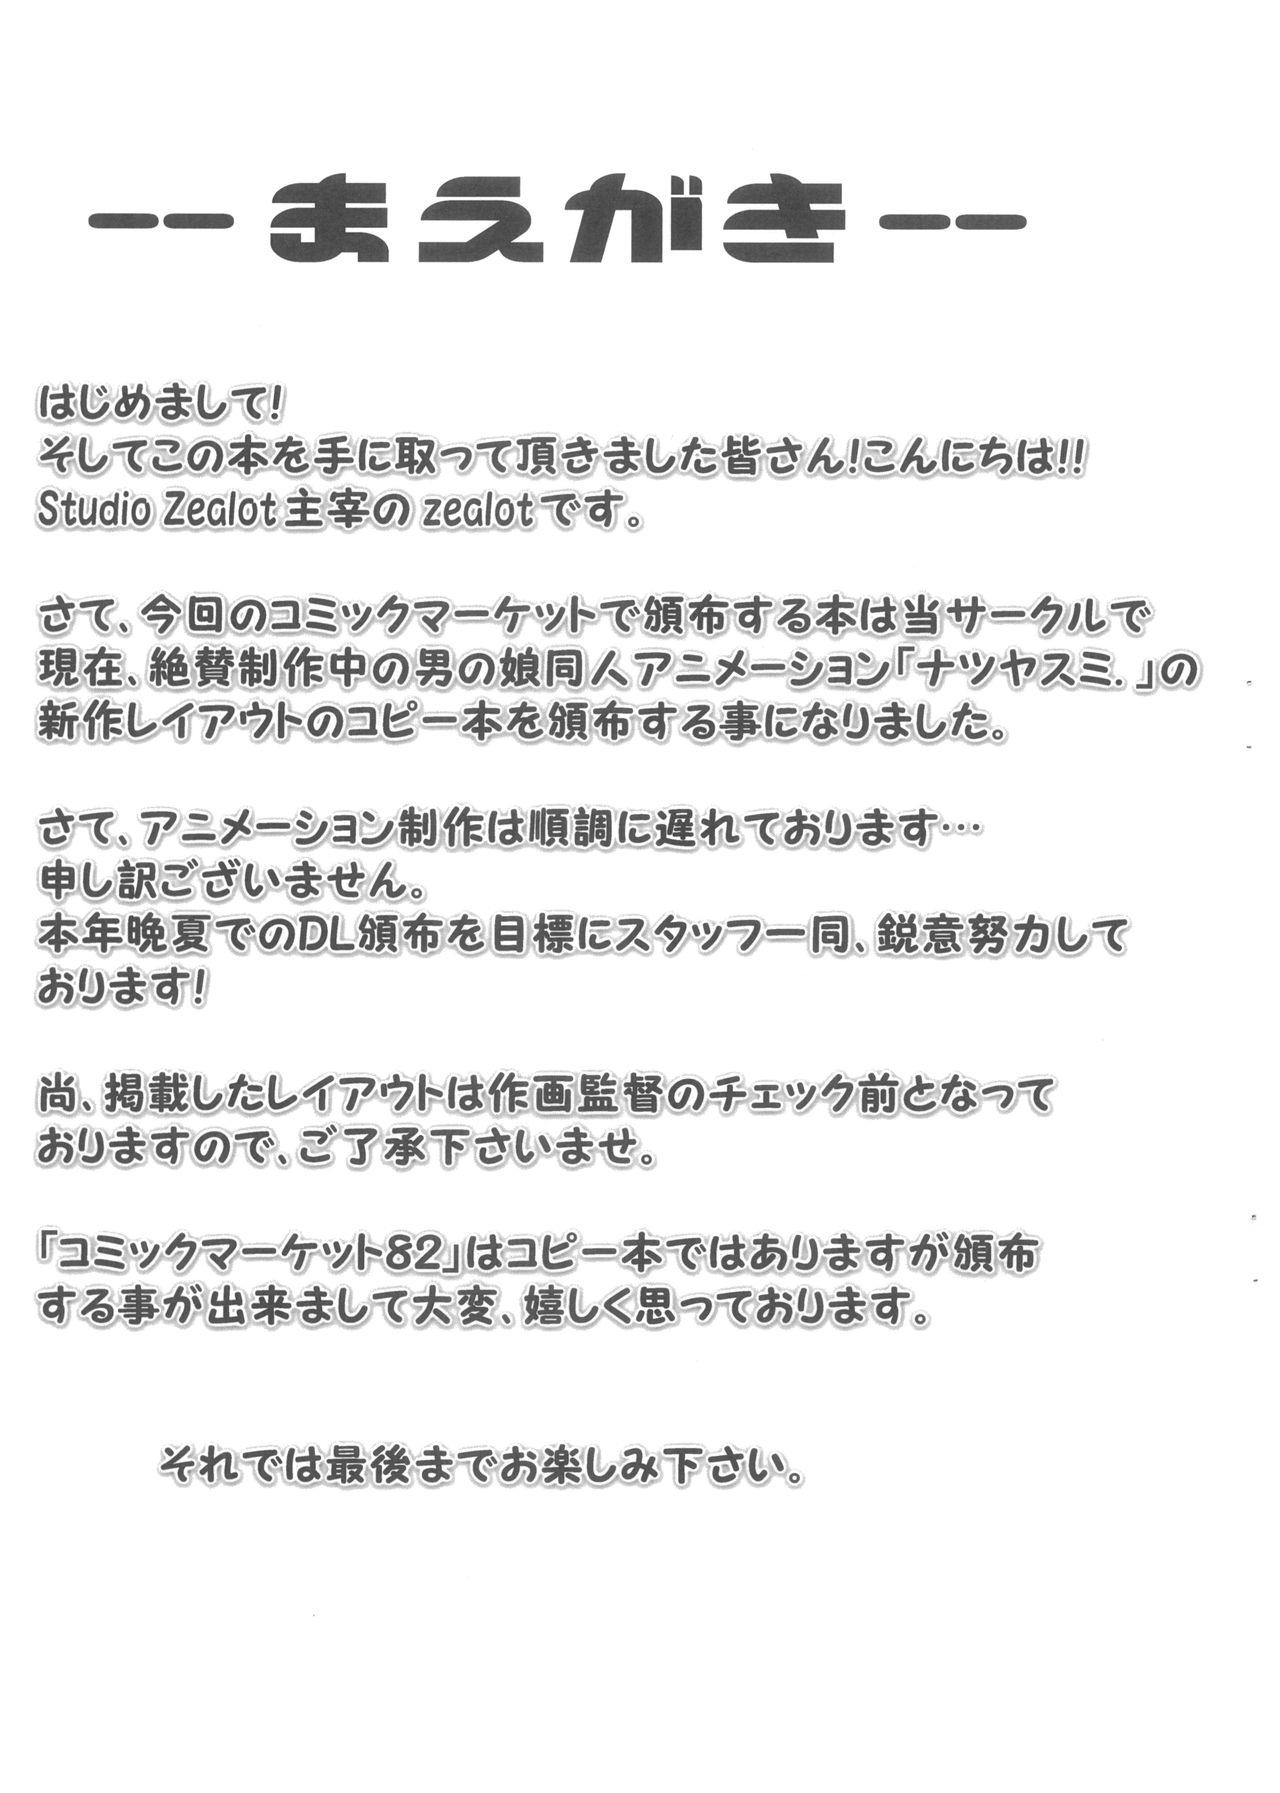 Natsuyasumi Period Layout Shuu 12 Aug. 2012 Ver. 4